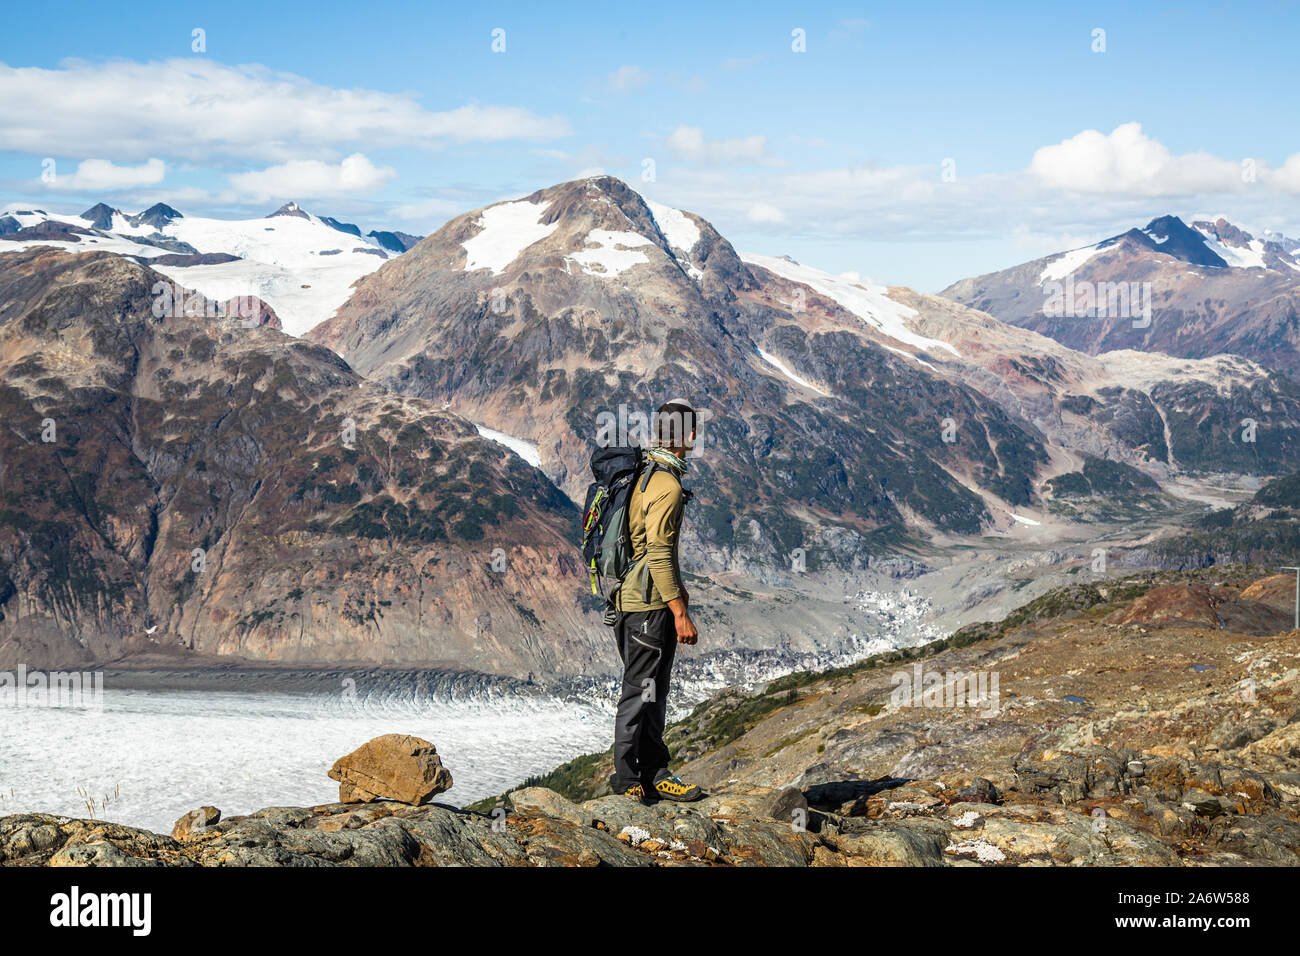 Hombre senderismo a través de la Canadian travesía mirando a lo largo de los escarpados picos y glaciares, cerca de la frontera de la Columbia Británica y Alaska. Foto de stock